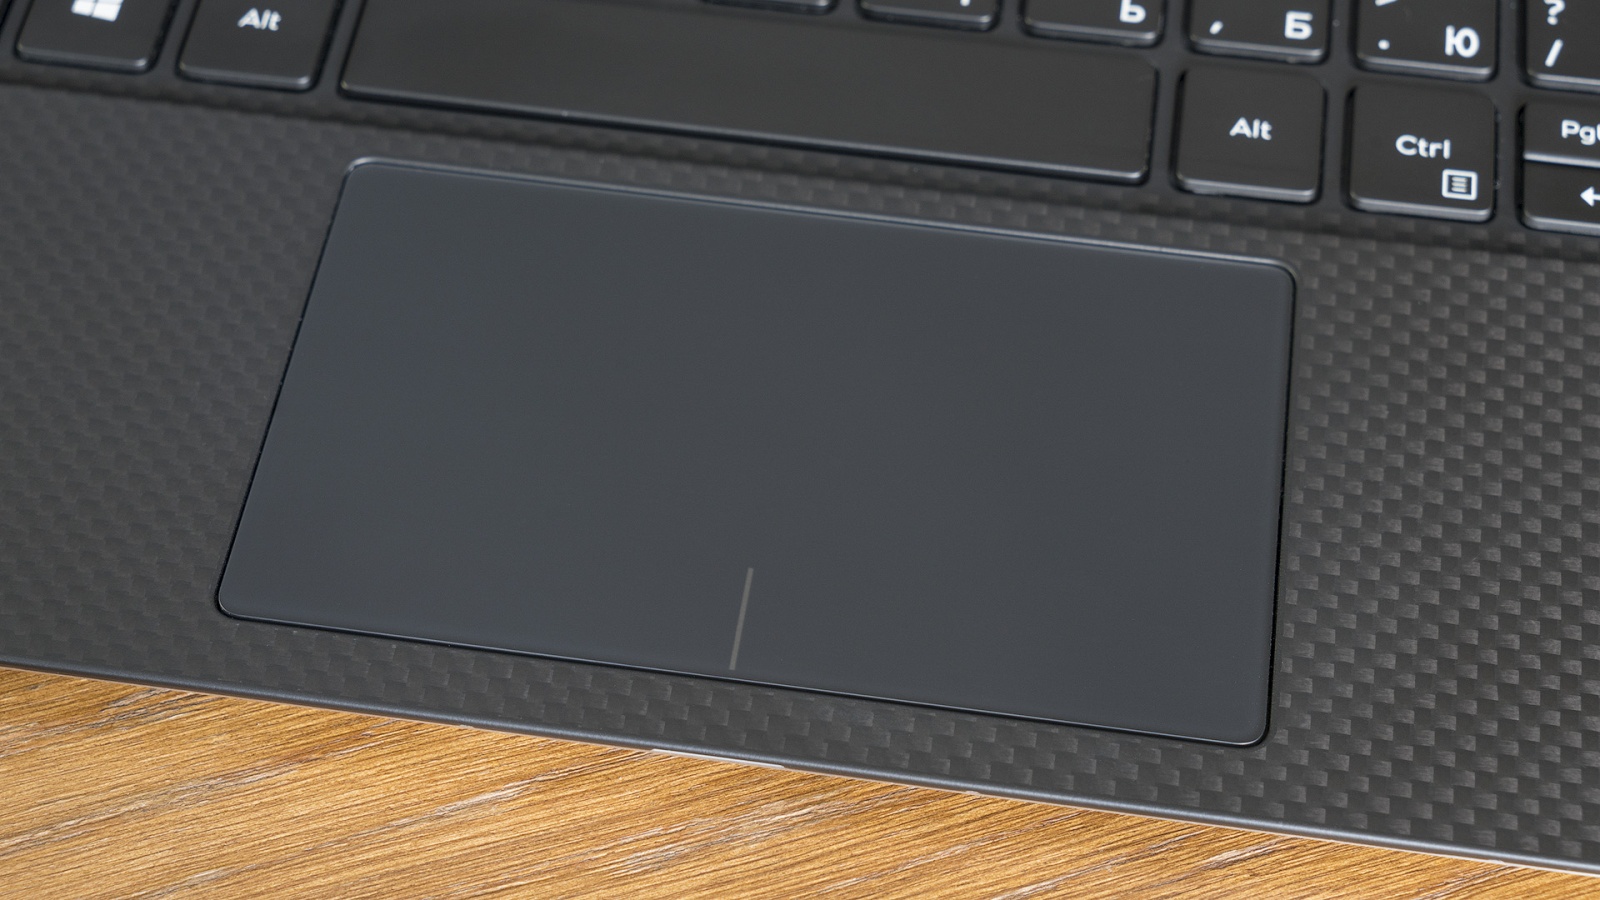 Обзор ноутбука Dell XPS 13 9370: лёгкий, красивый, быстрый - 12